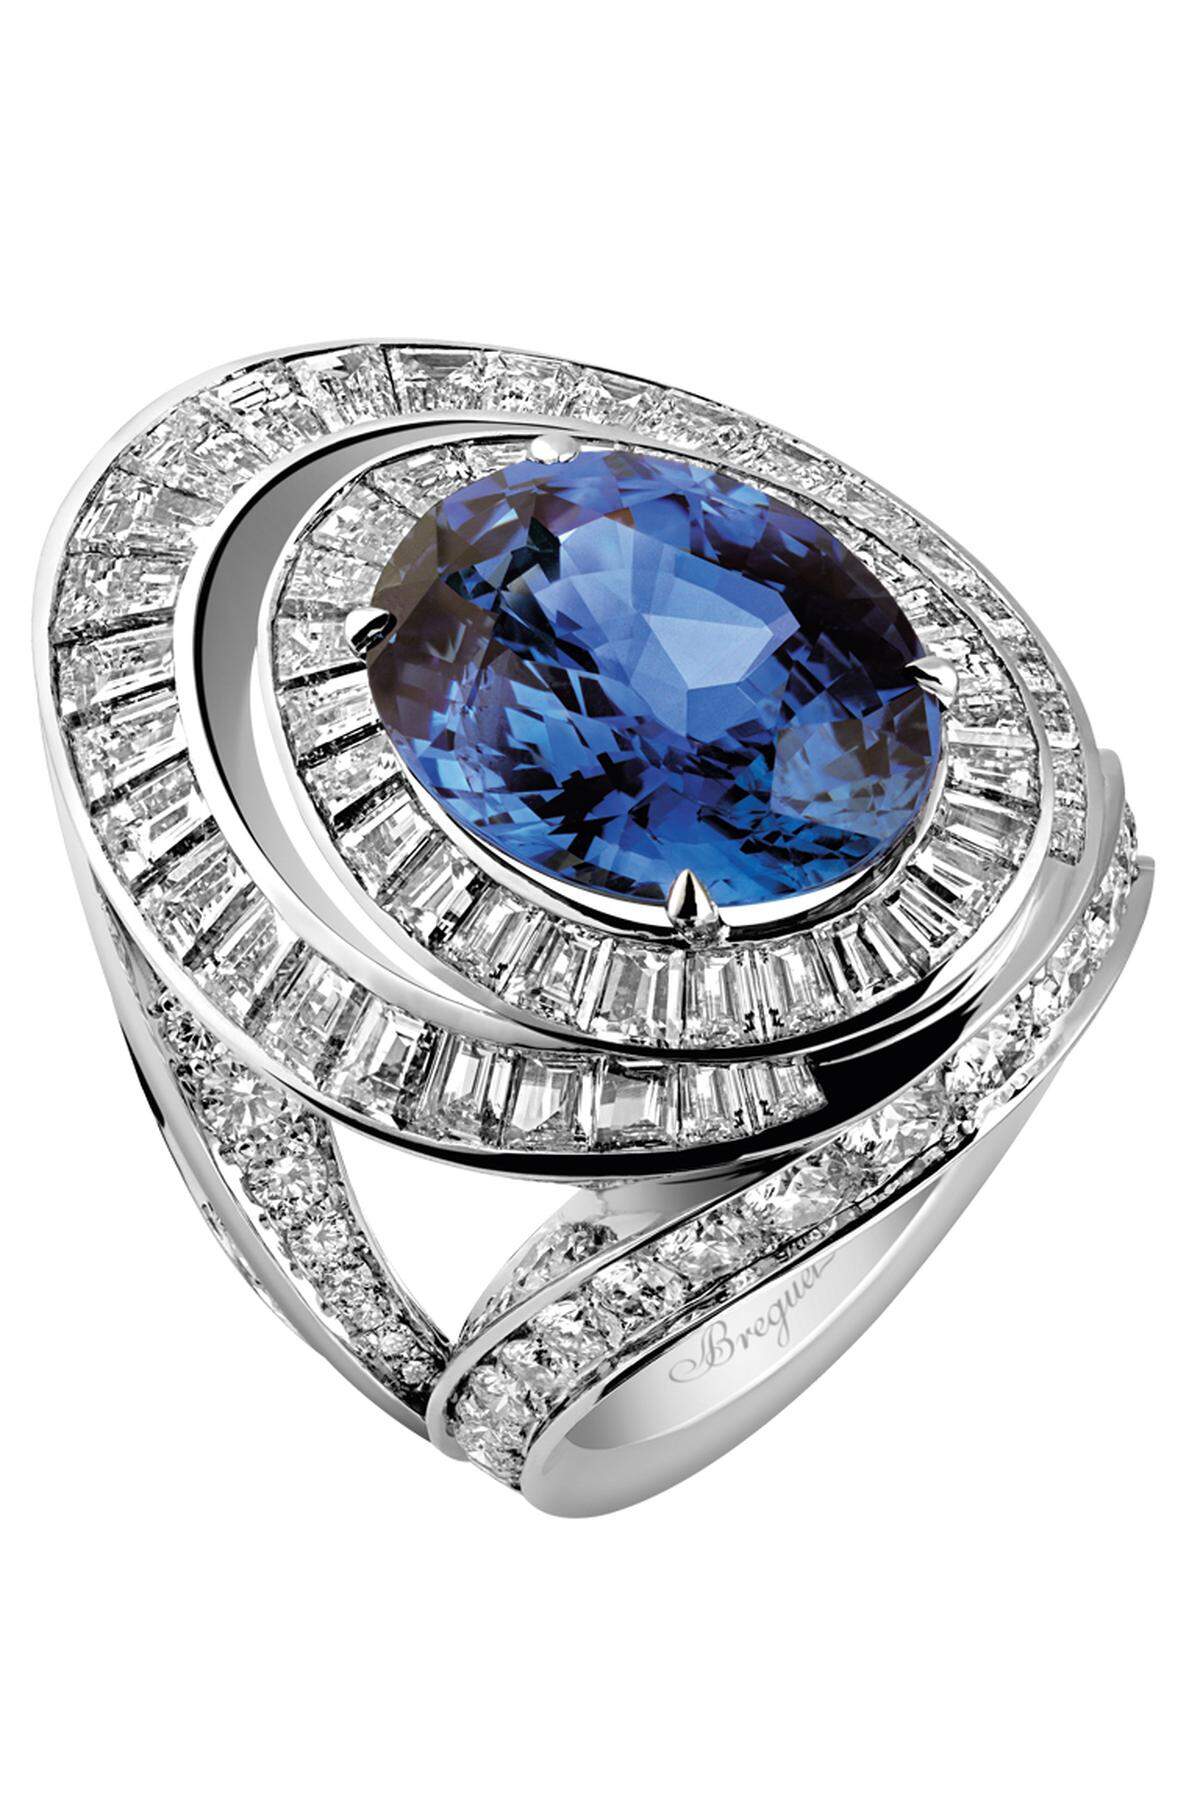 „Reine de Naples“ aus Platin 950, mit Brillanten, 2,48 ct., Diamanten im Baguetteschliff, etwa 7,50 ct., und einem ovalen blauen Saphir, 9,50 ct.